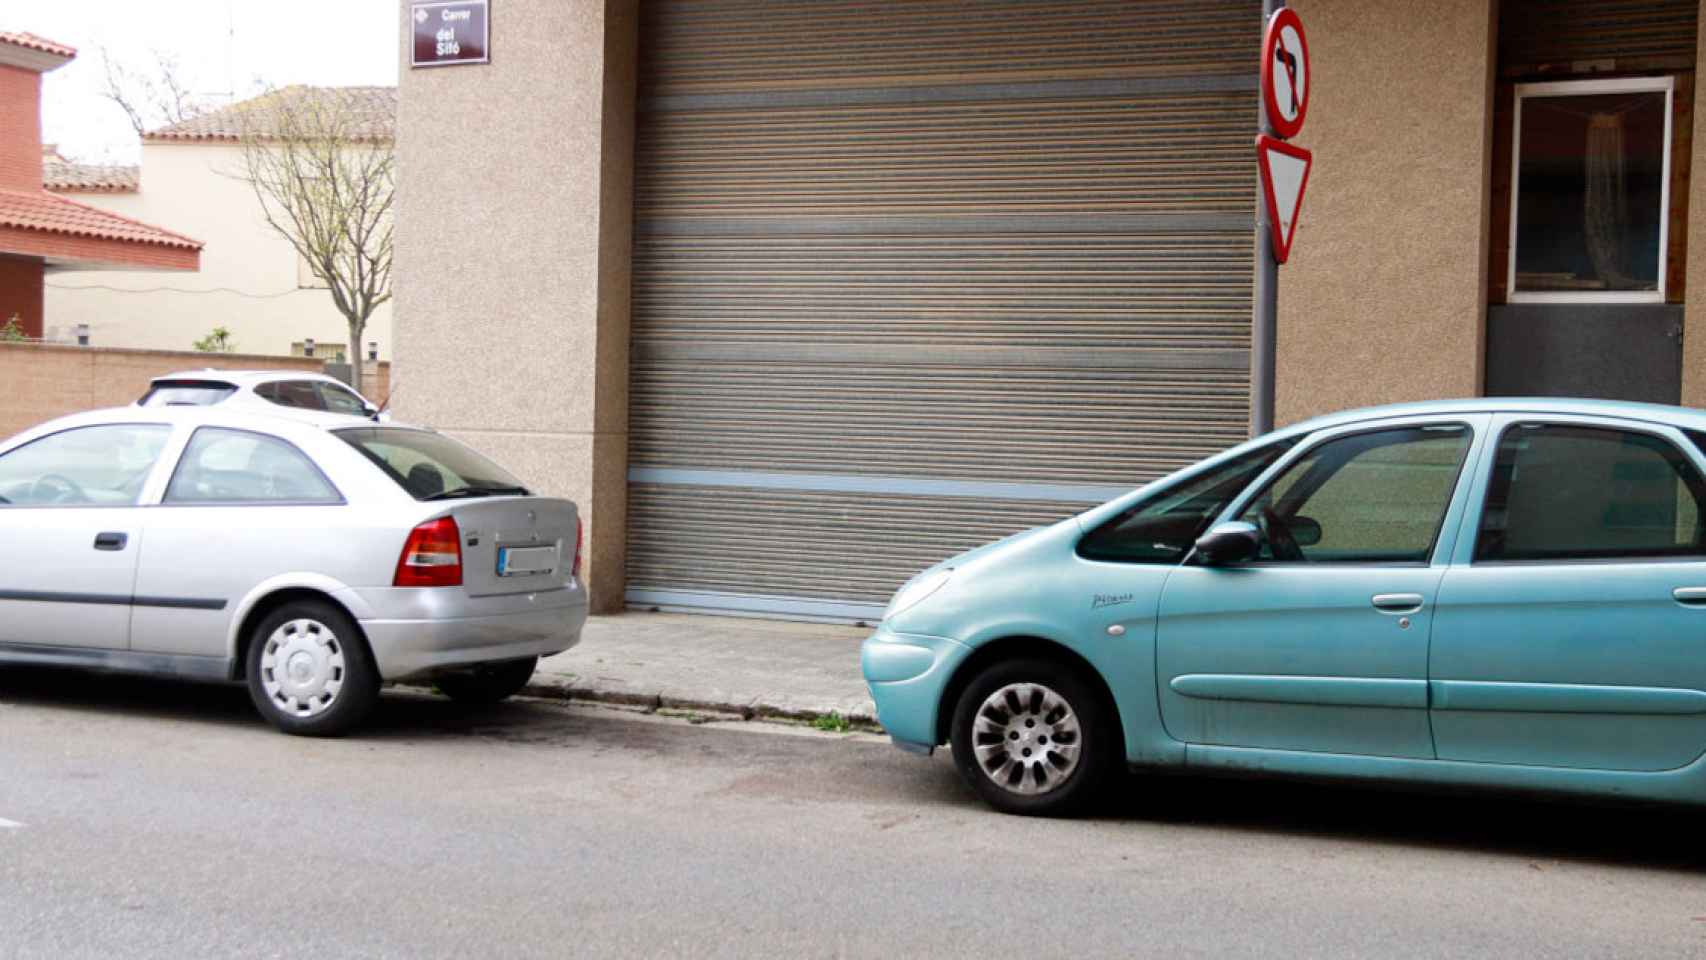 Imagen del lugar de Lleida donde se ha hallado al taxista apuñalado sin vida / CG